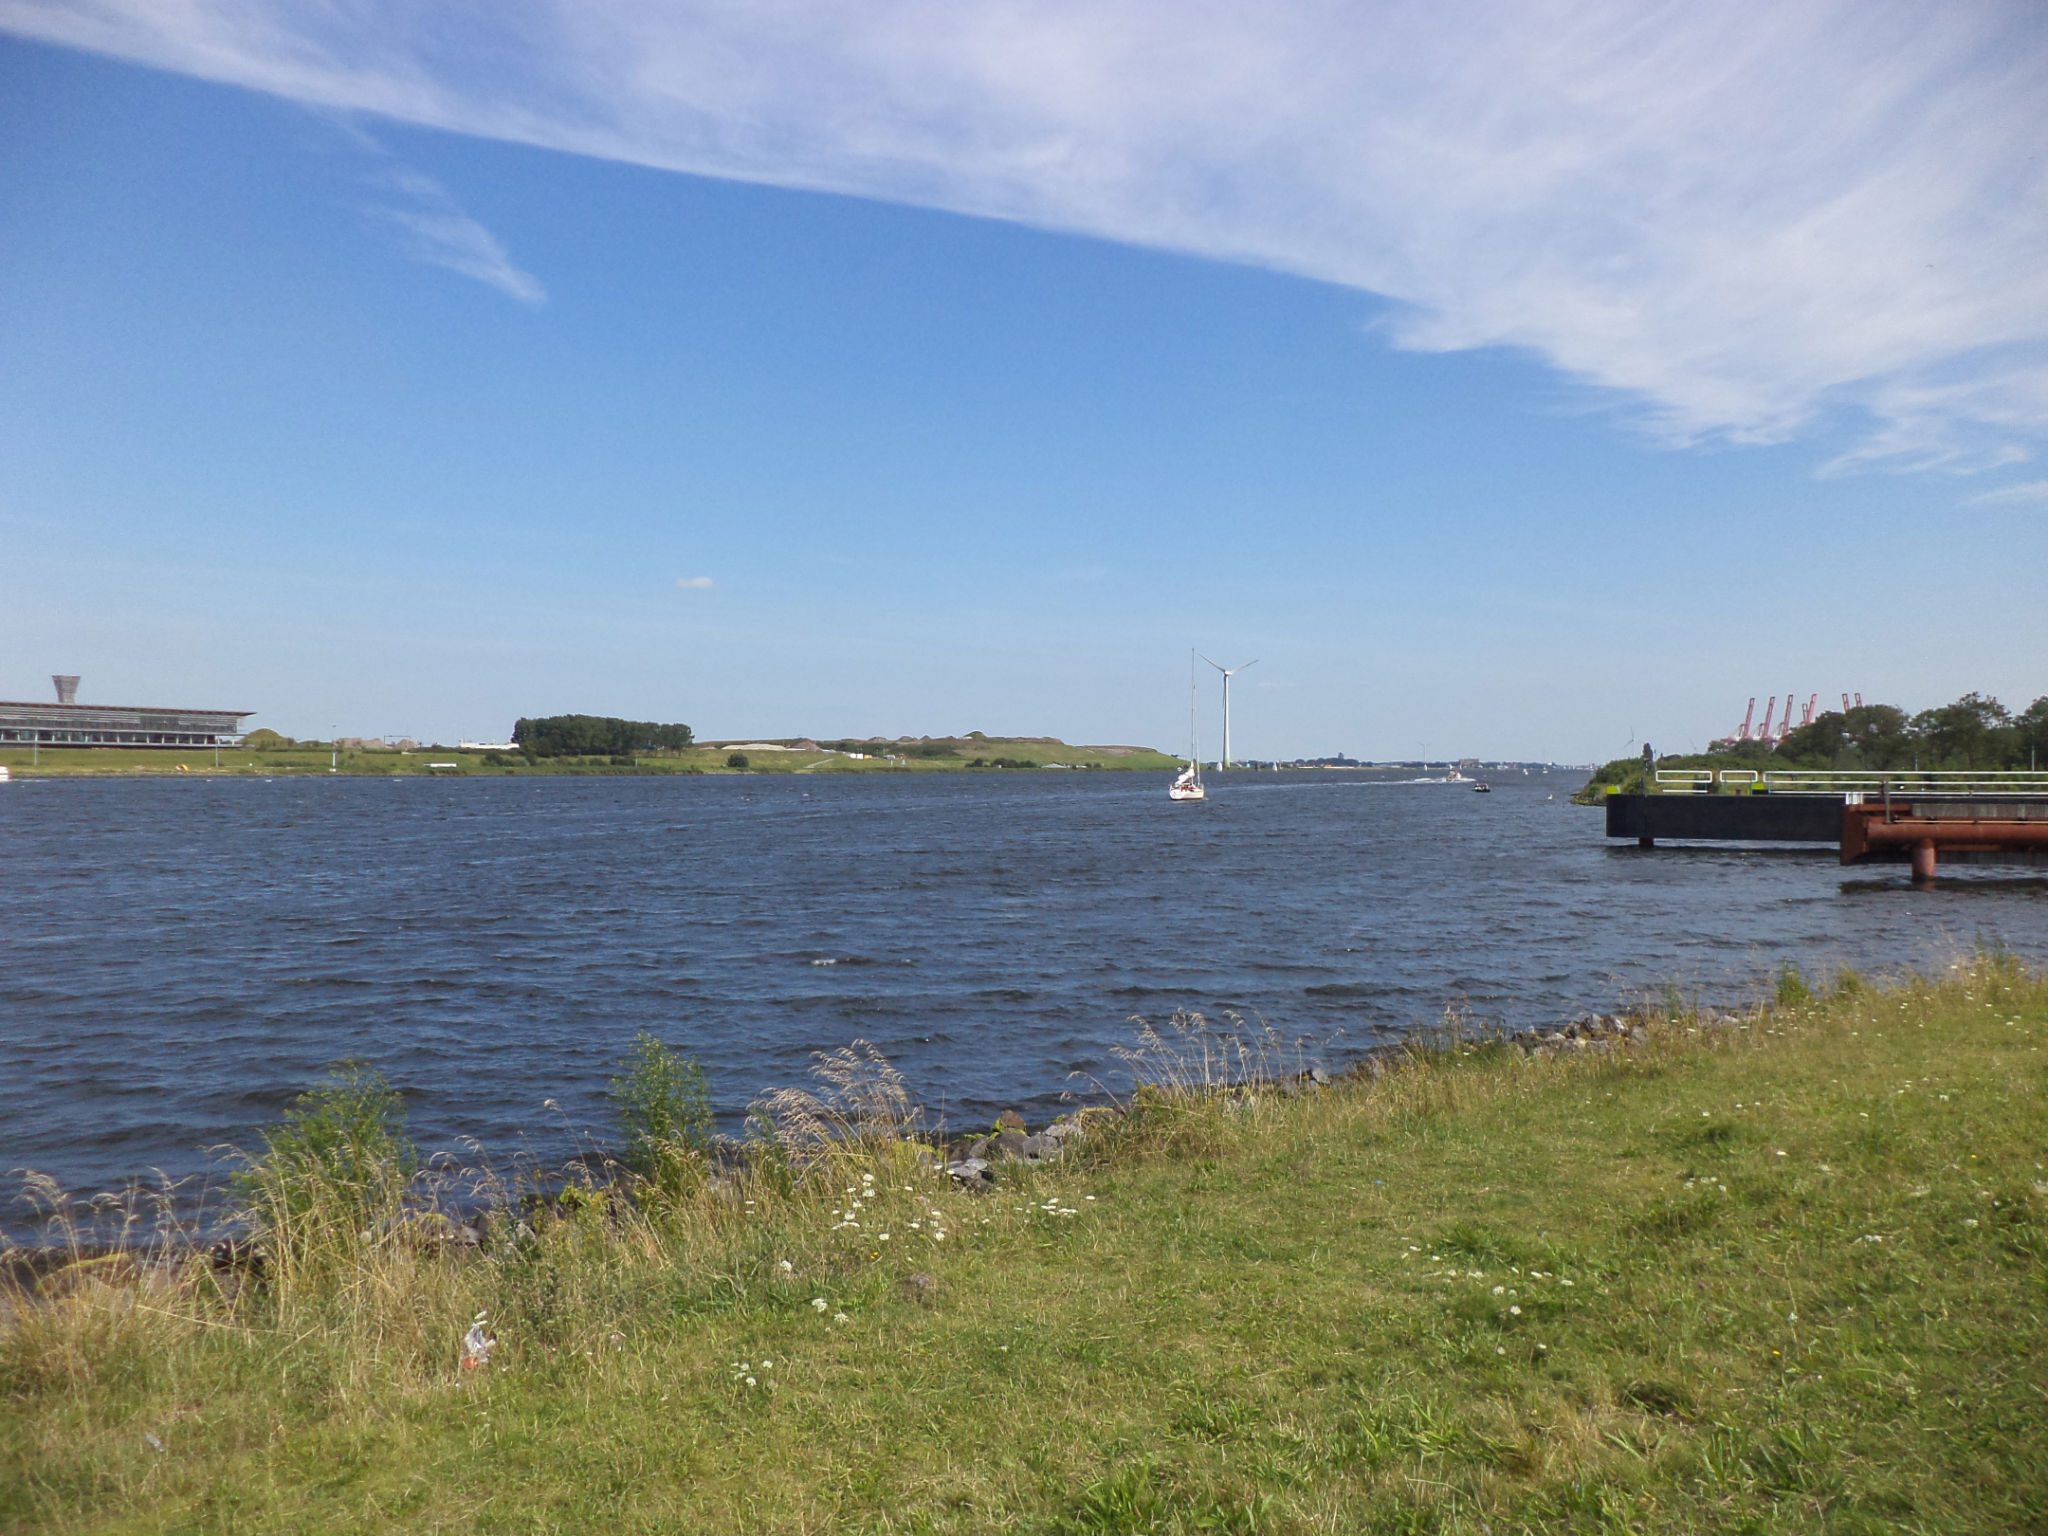 het Amsterdam-Rijn kanaal (denk ik)